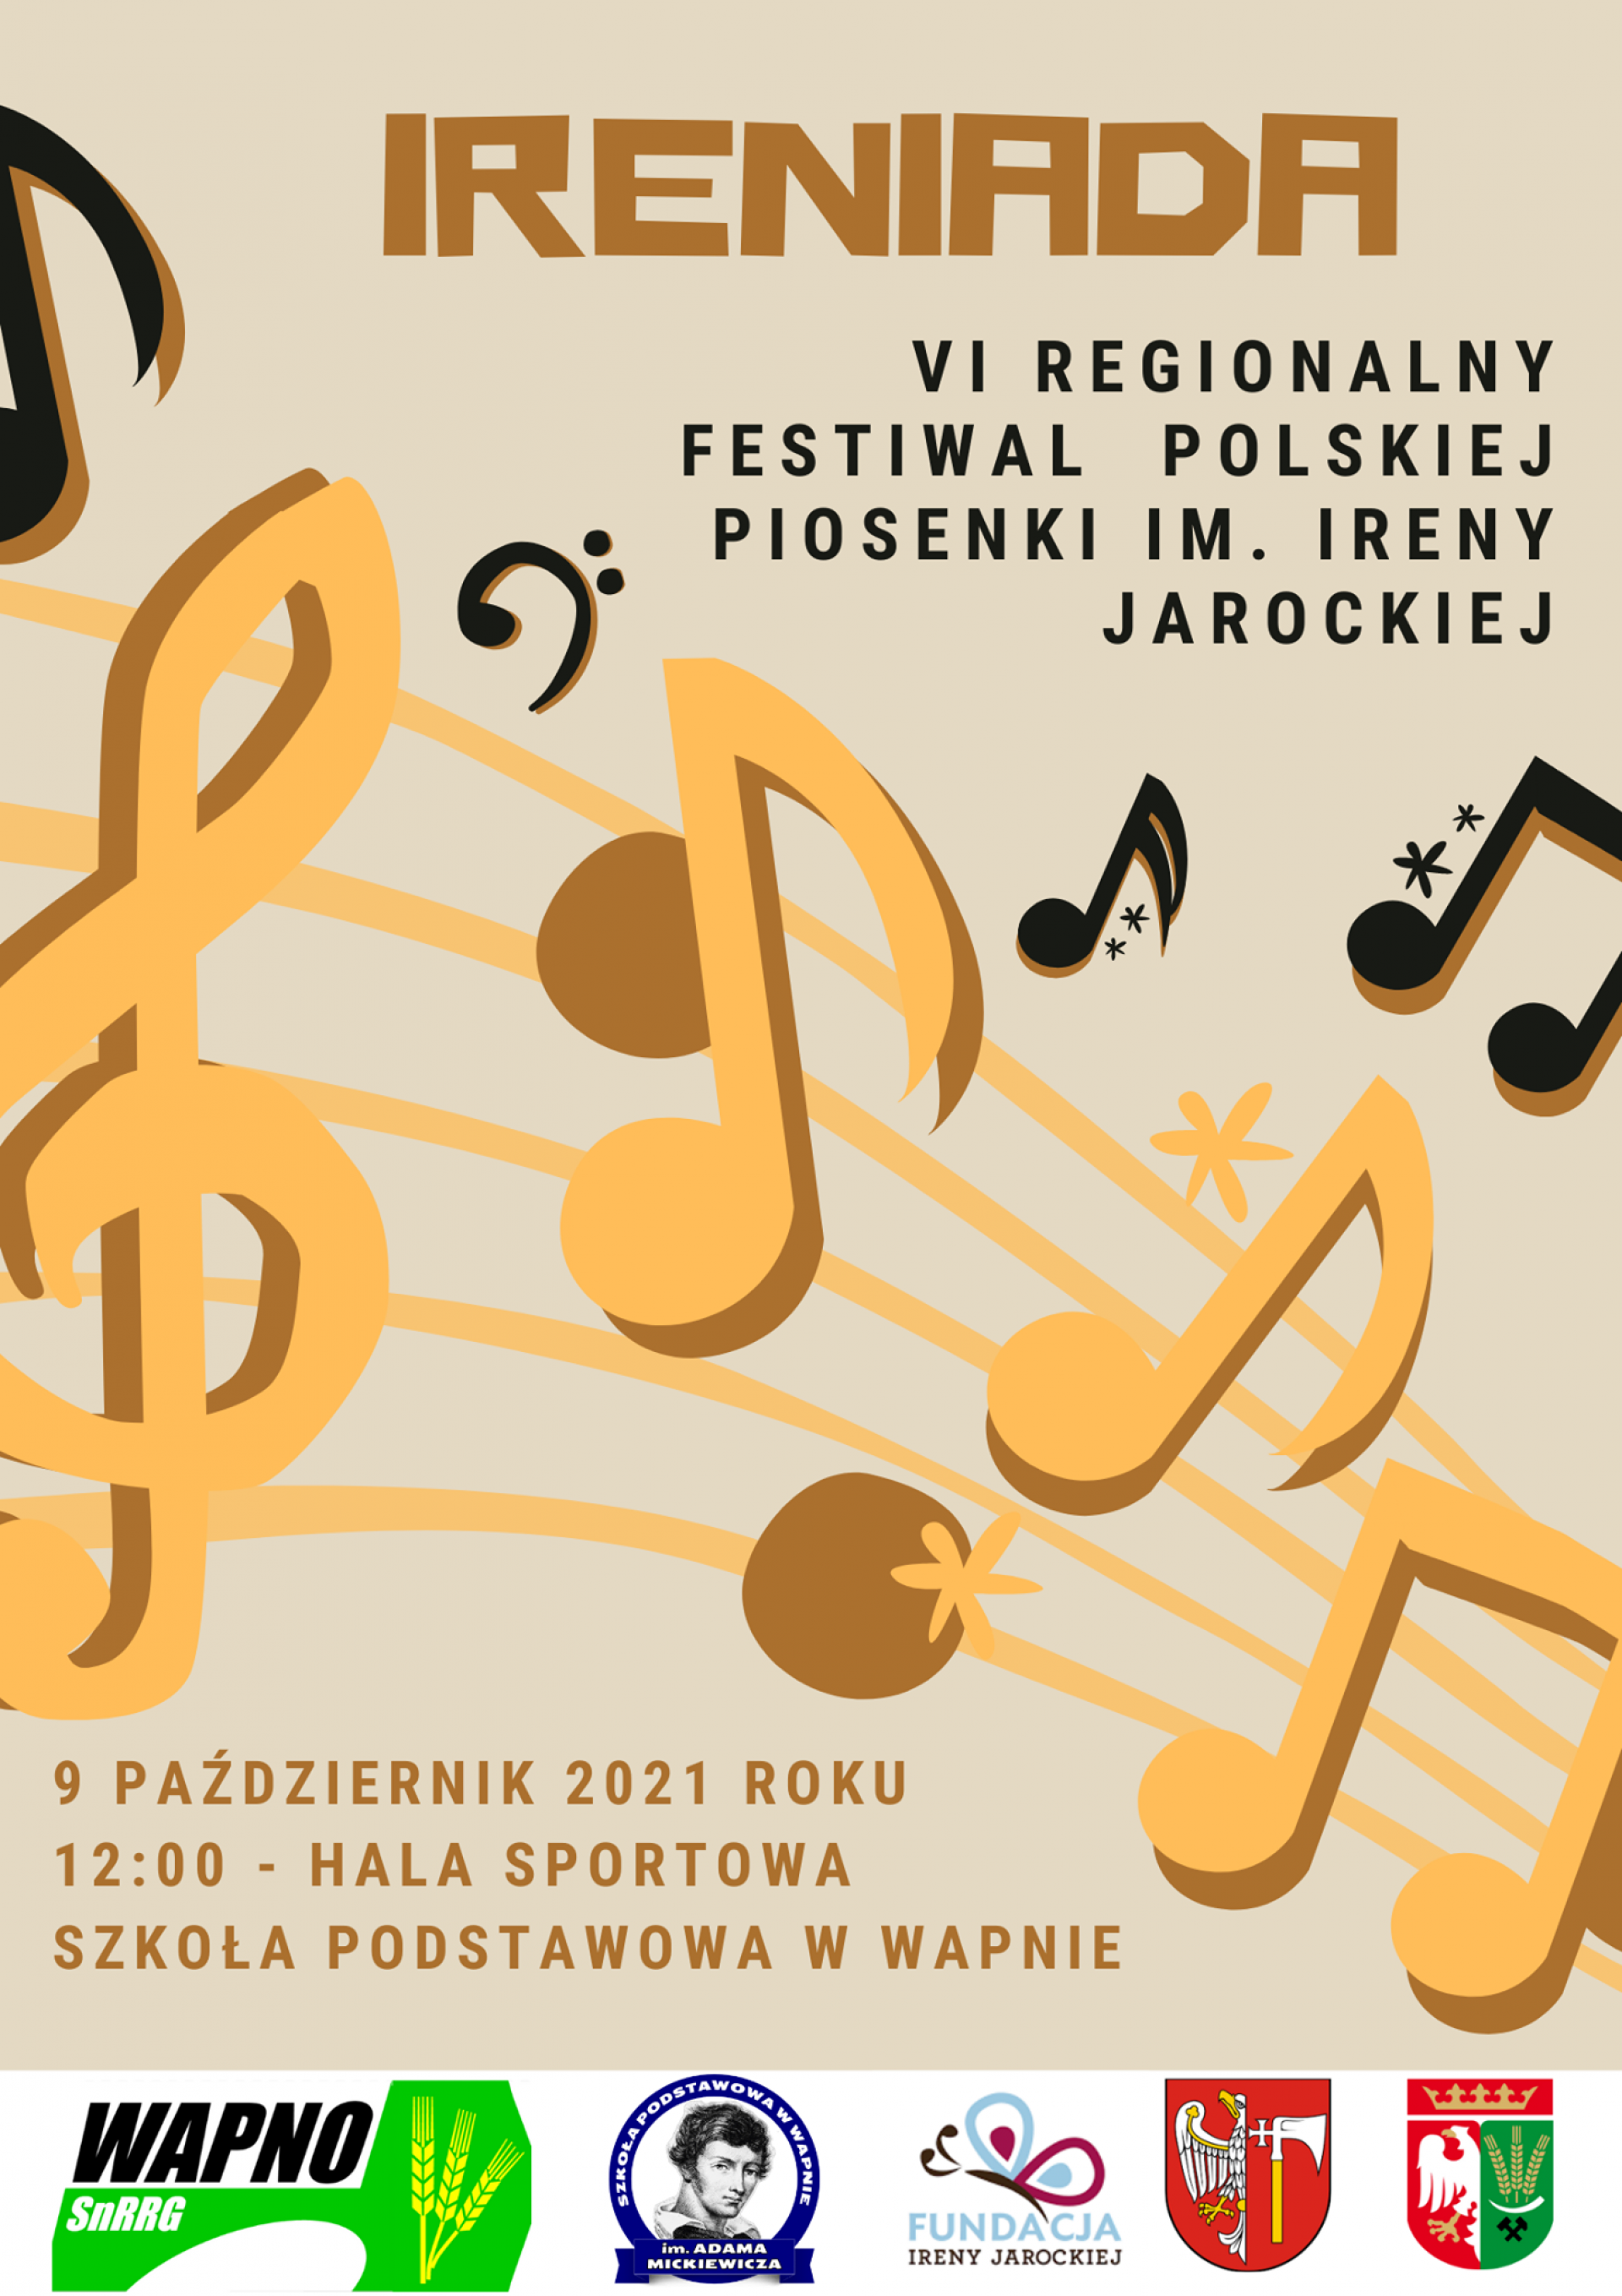 IRENIADA - VI Regionalny Festiwal Polskiej Piosenki im. Ireny Jarockiej